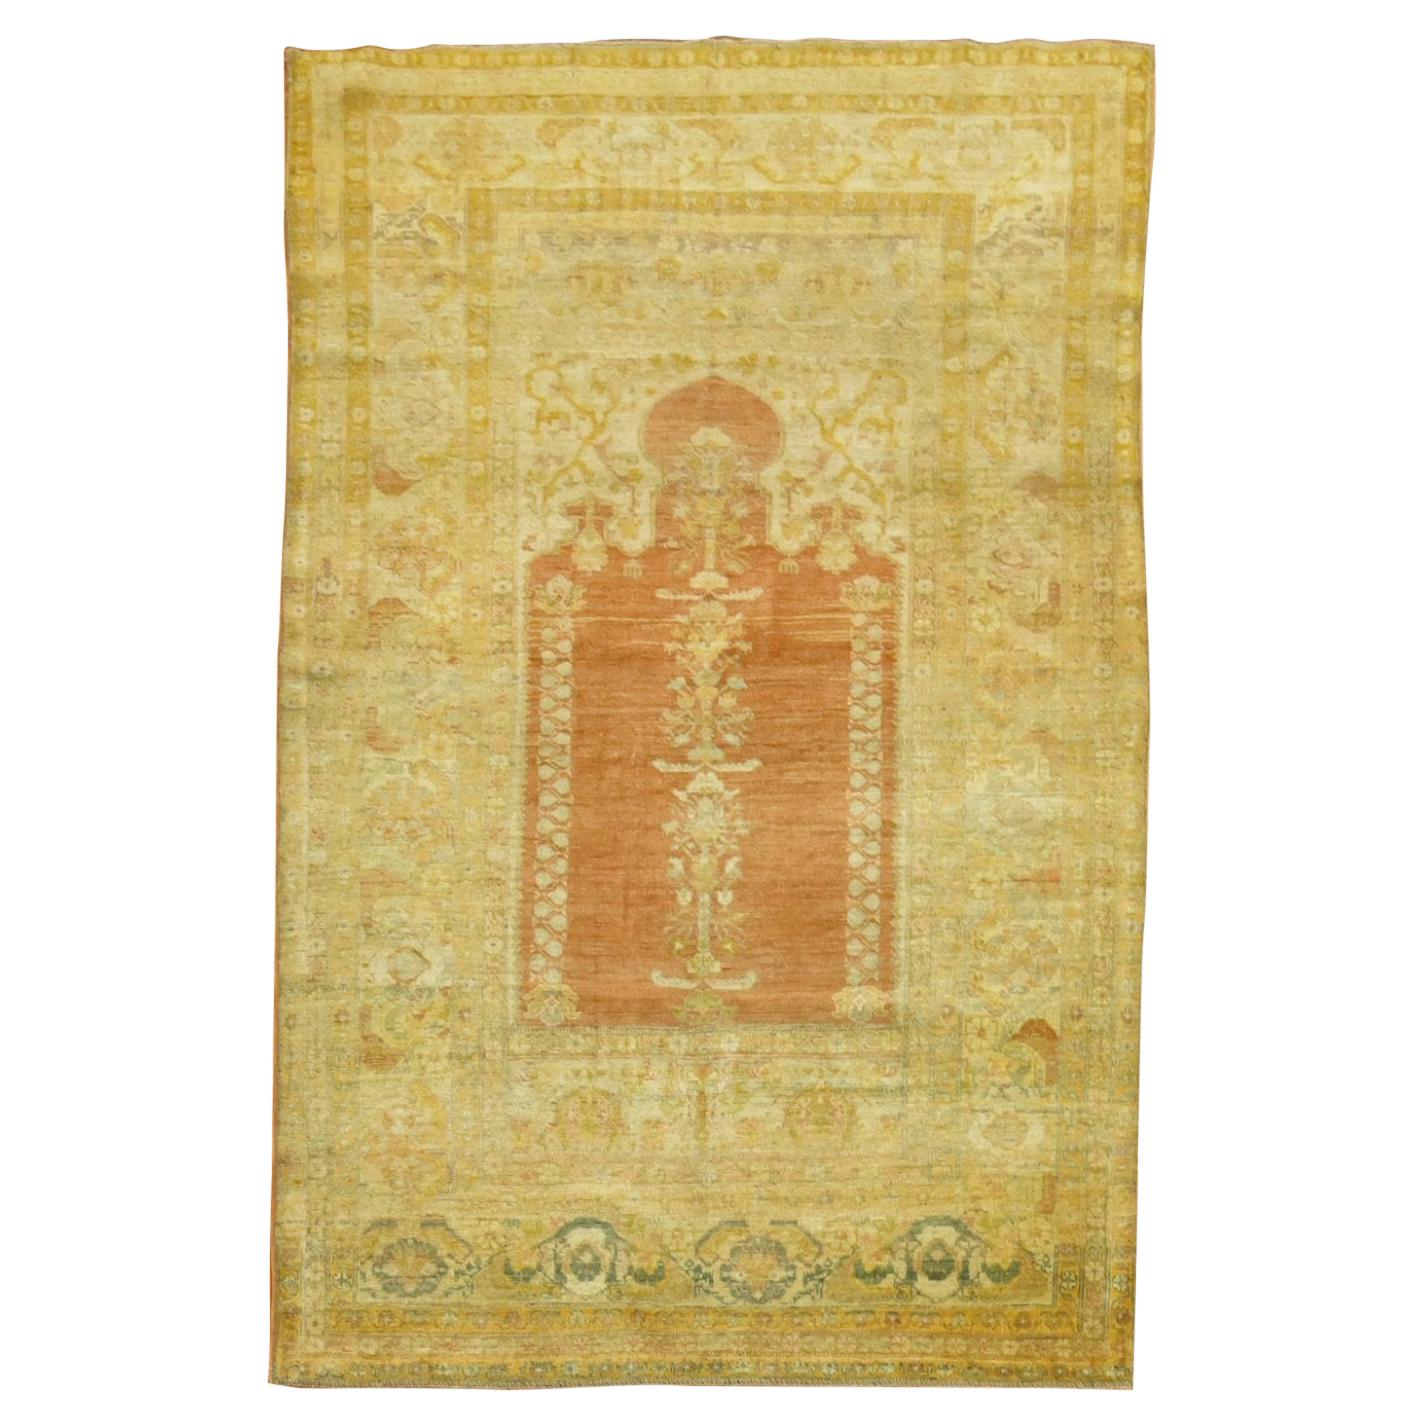 Türkischer Sivas-Teppich aus dem 19. Jahrhundert, hervorragender Kennerwert